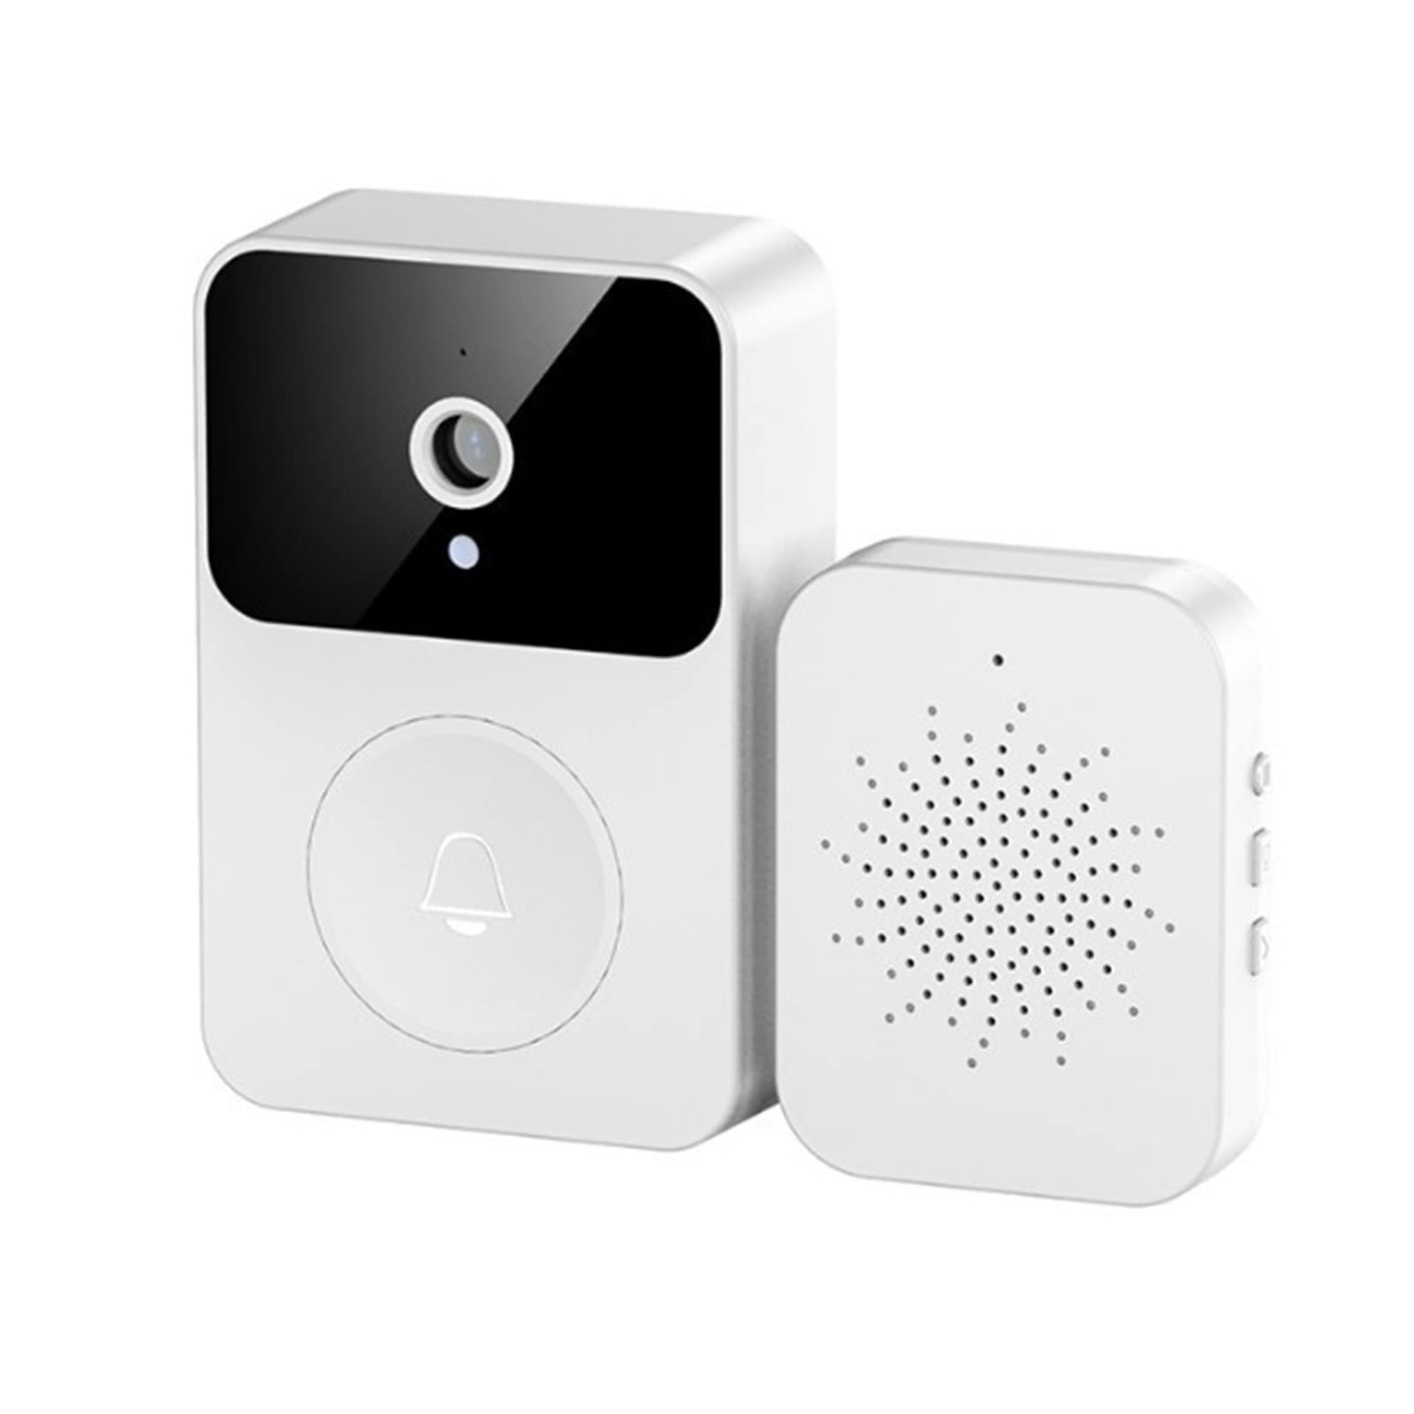 MECOLA Smart Wireless Doorbell with Camera Remote Video Doorbell WiFi Rechargeable Intelligent Visual Doorbell Home Intercom Hd Night Vision Security Door Doorbellwhite